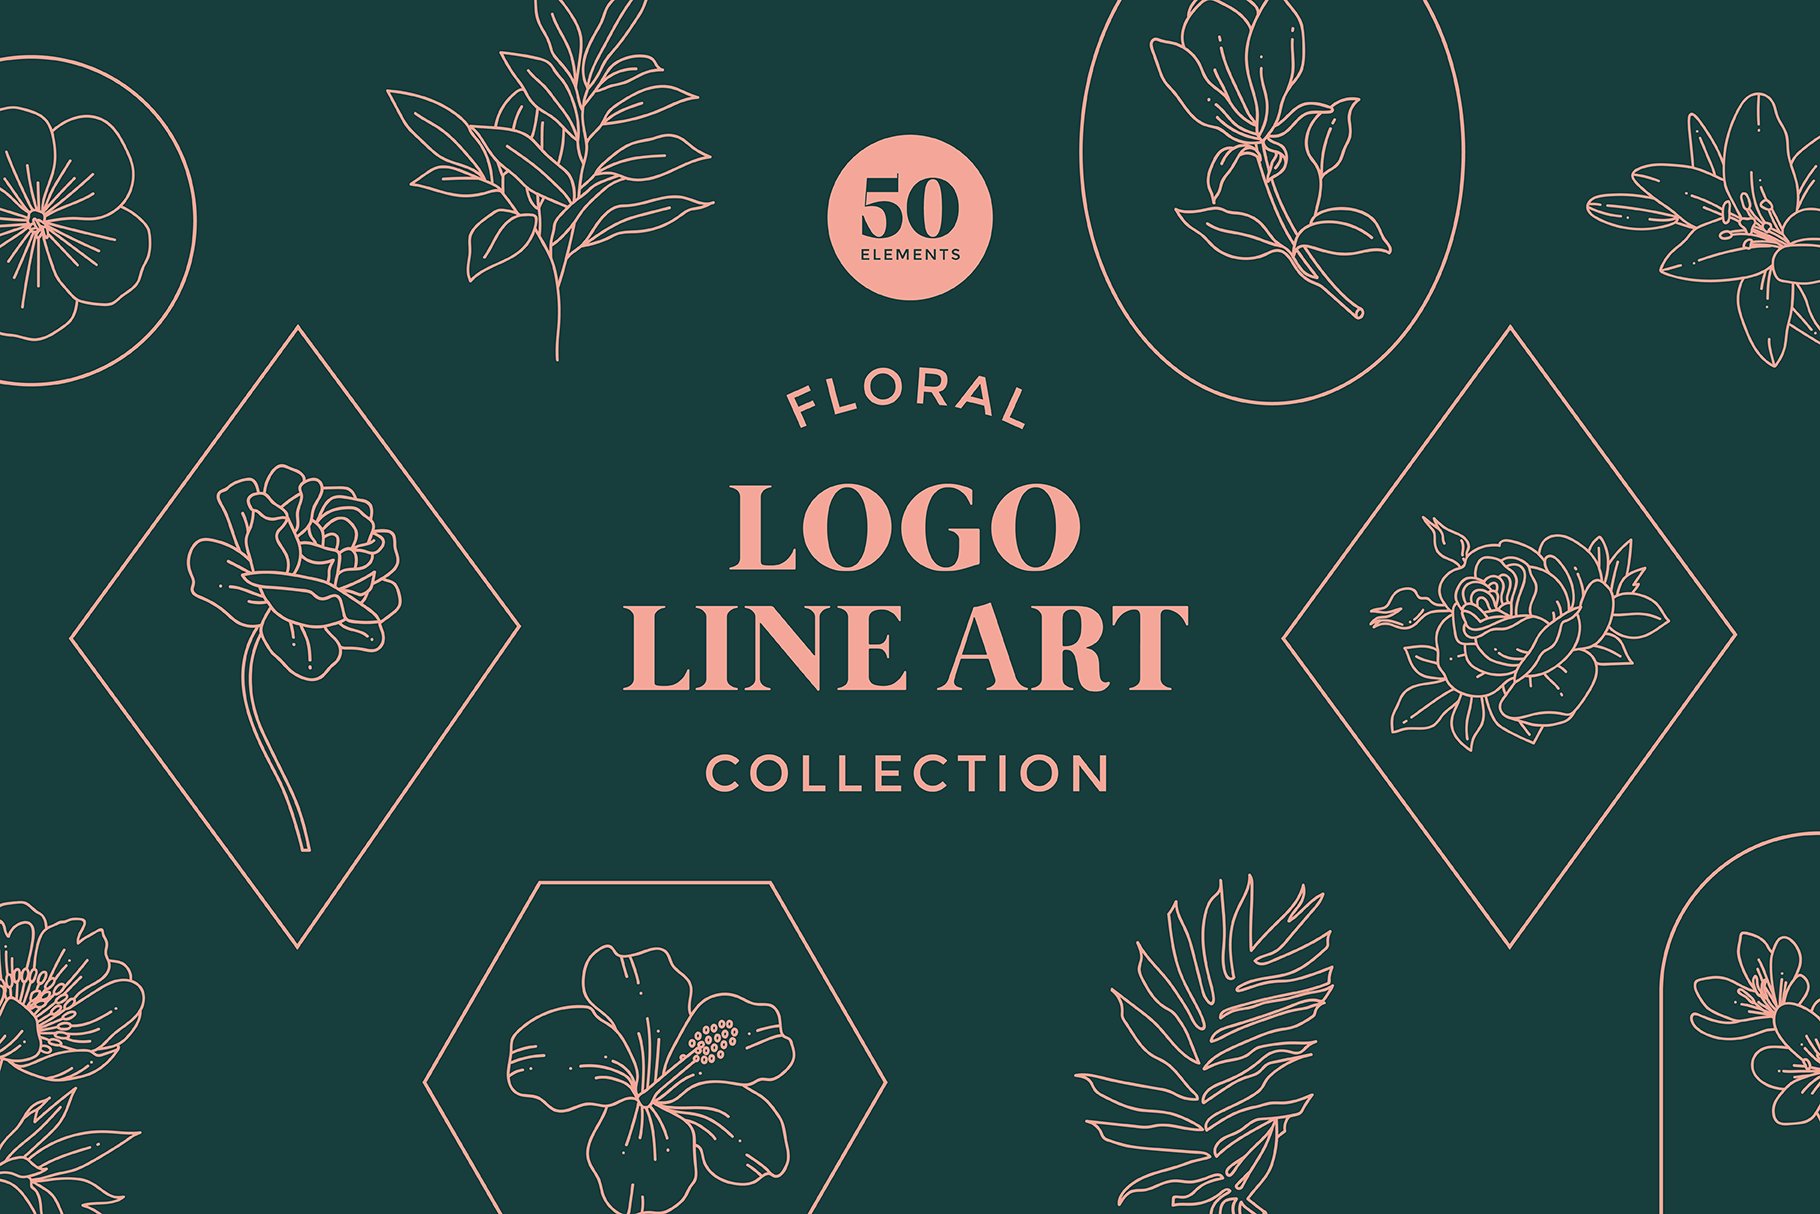 Floral Logo Line Art Set cover image.